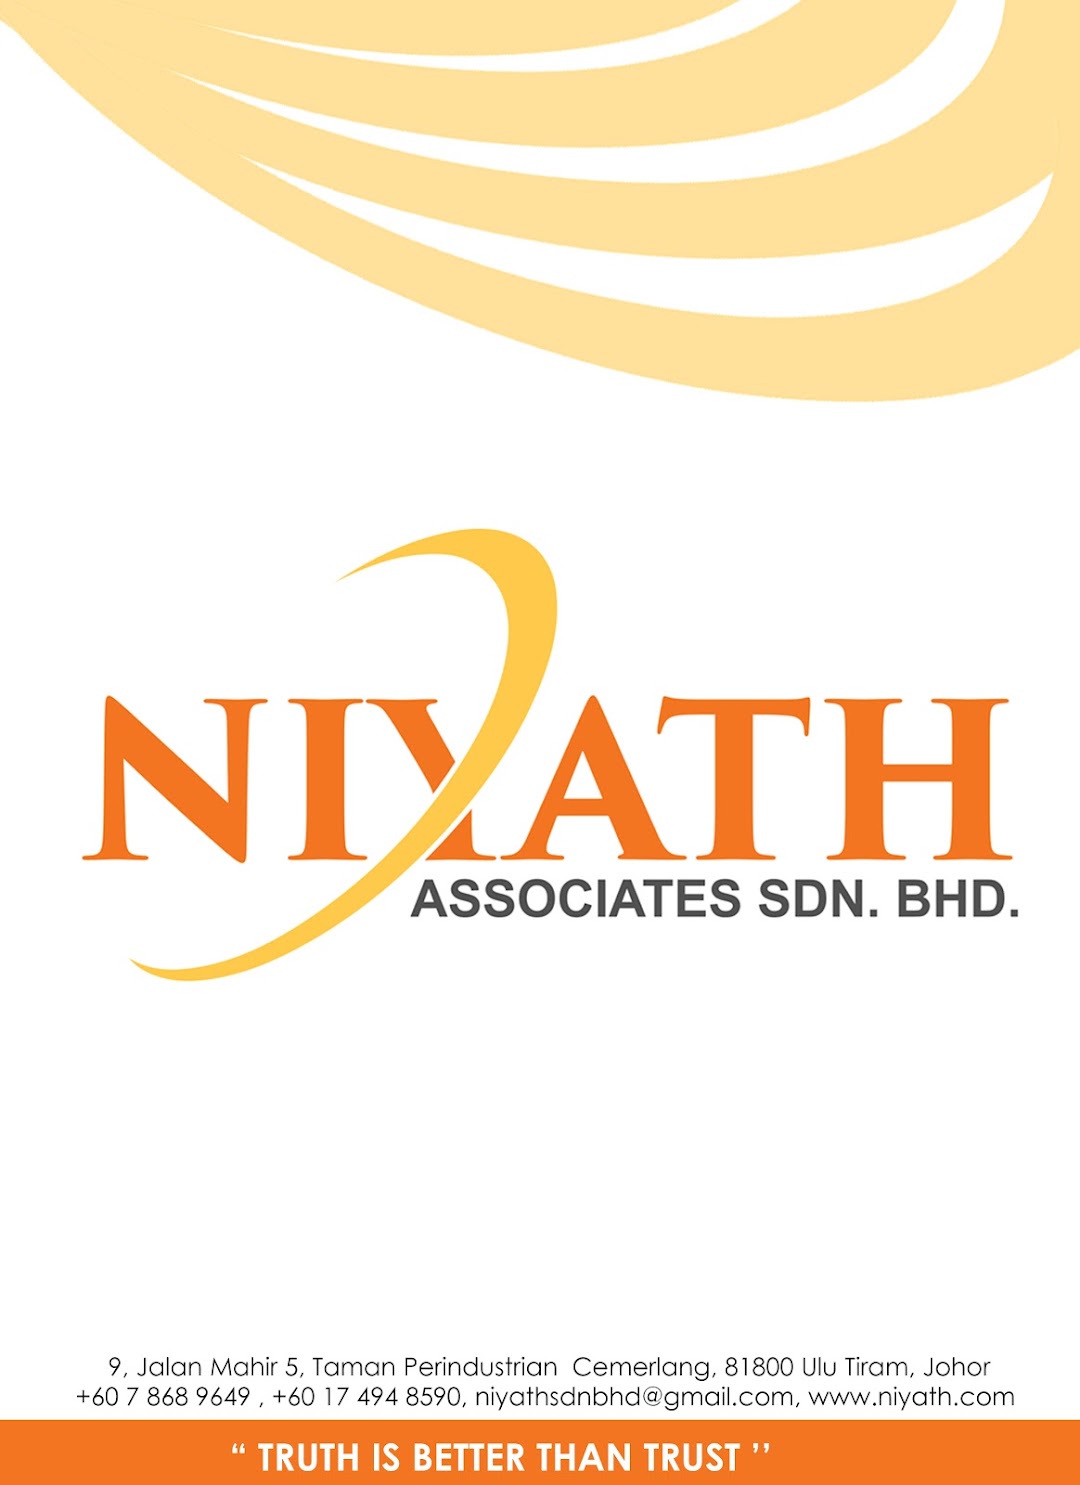 NIYATH ASSOCIATES SDN. BHD.